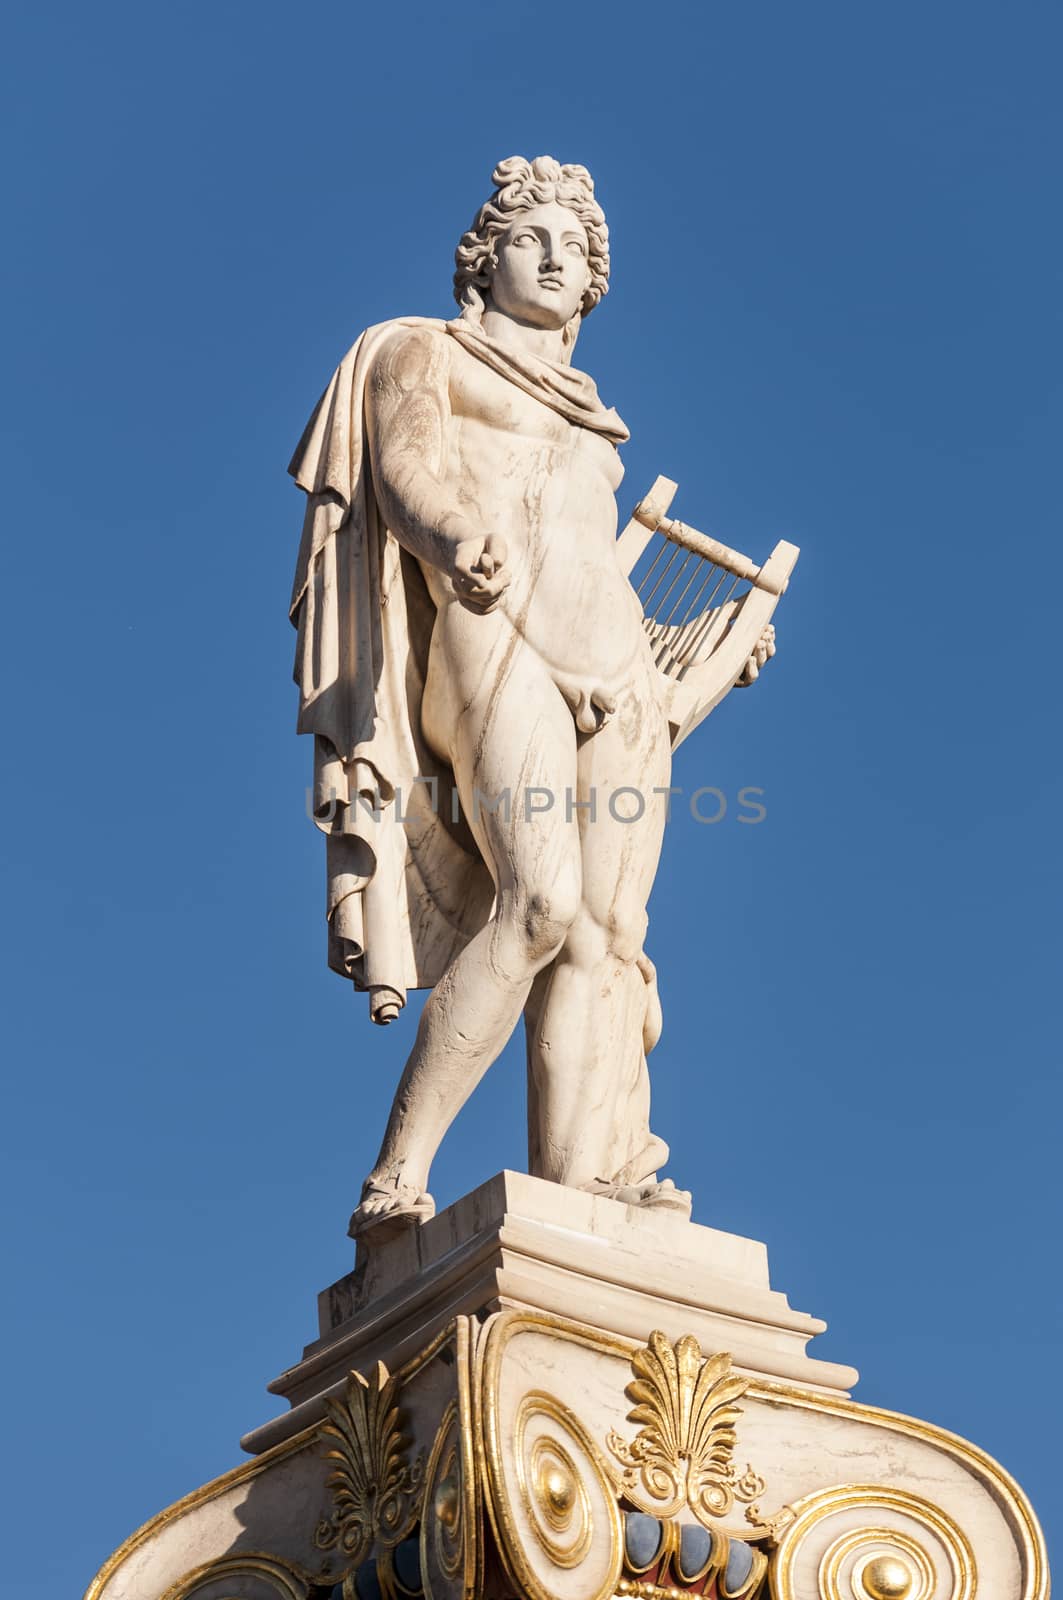 classic Apollo statue